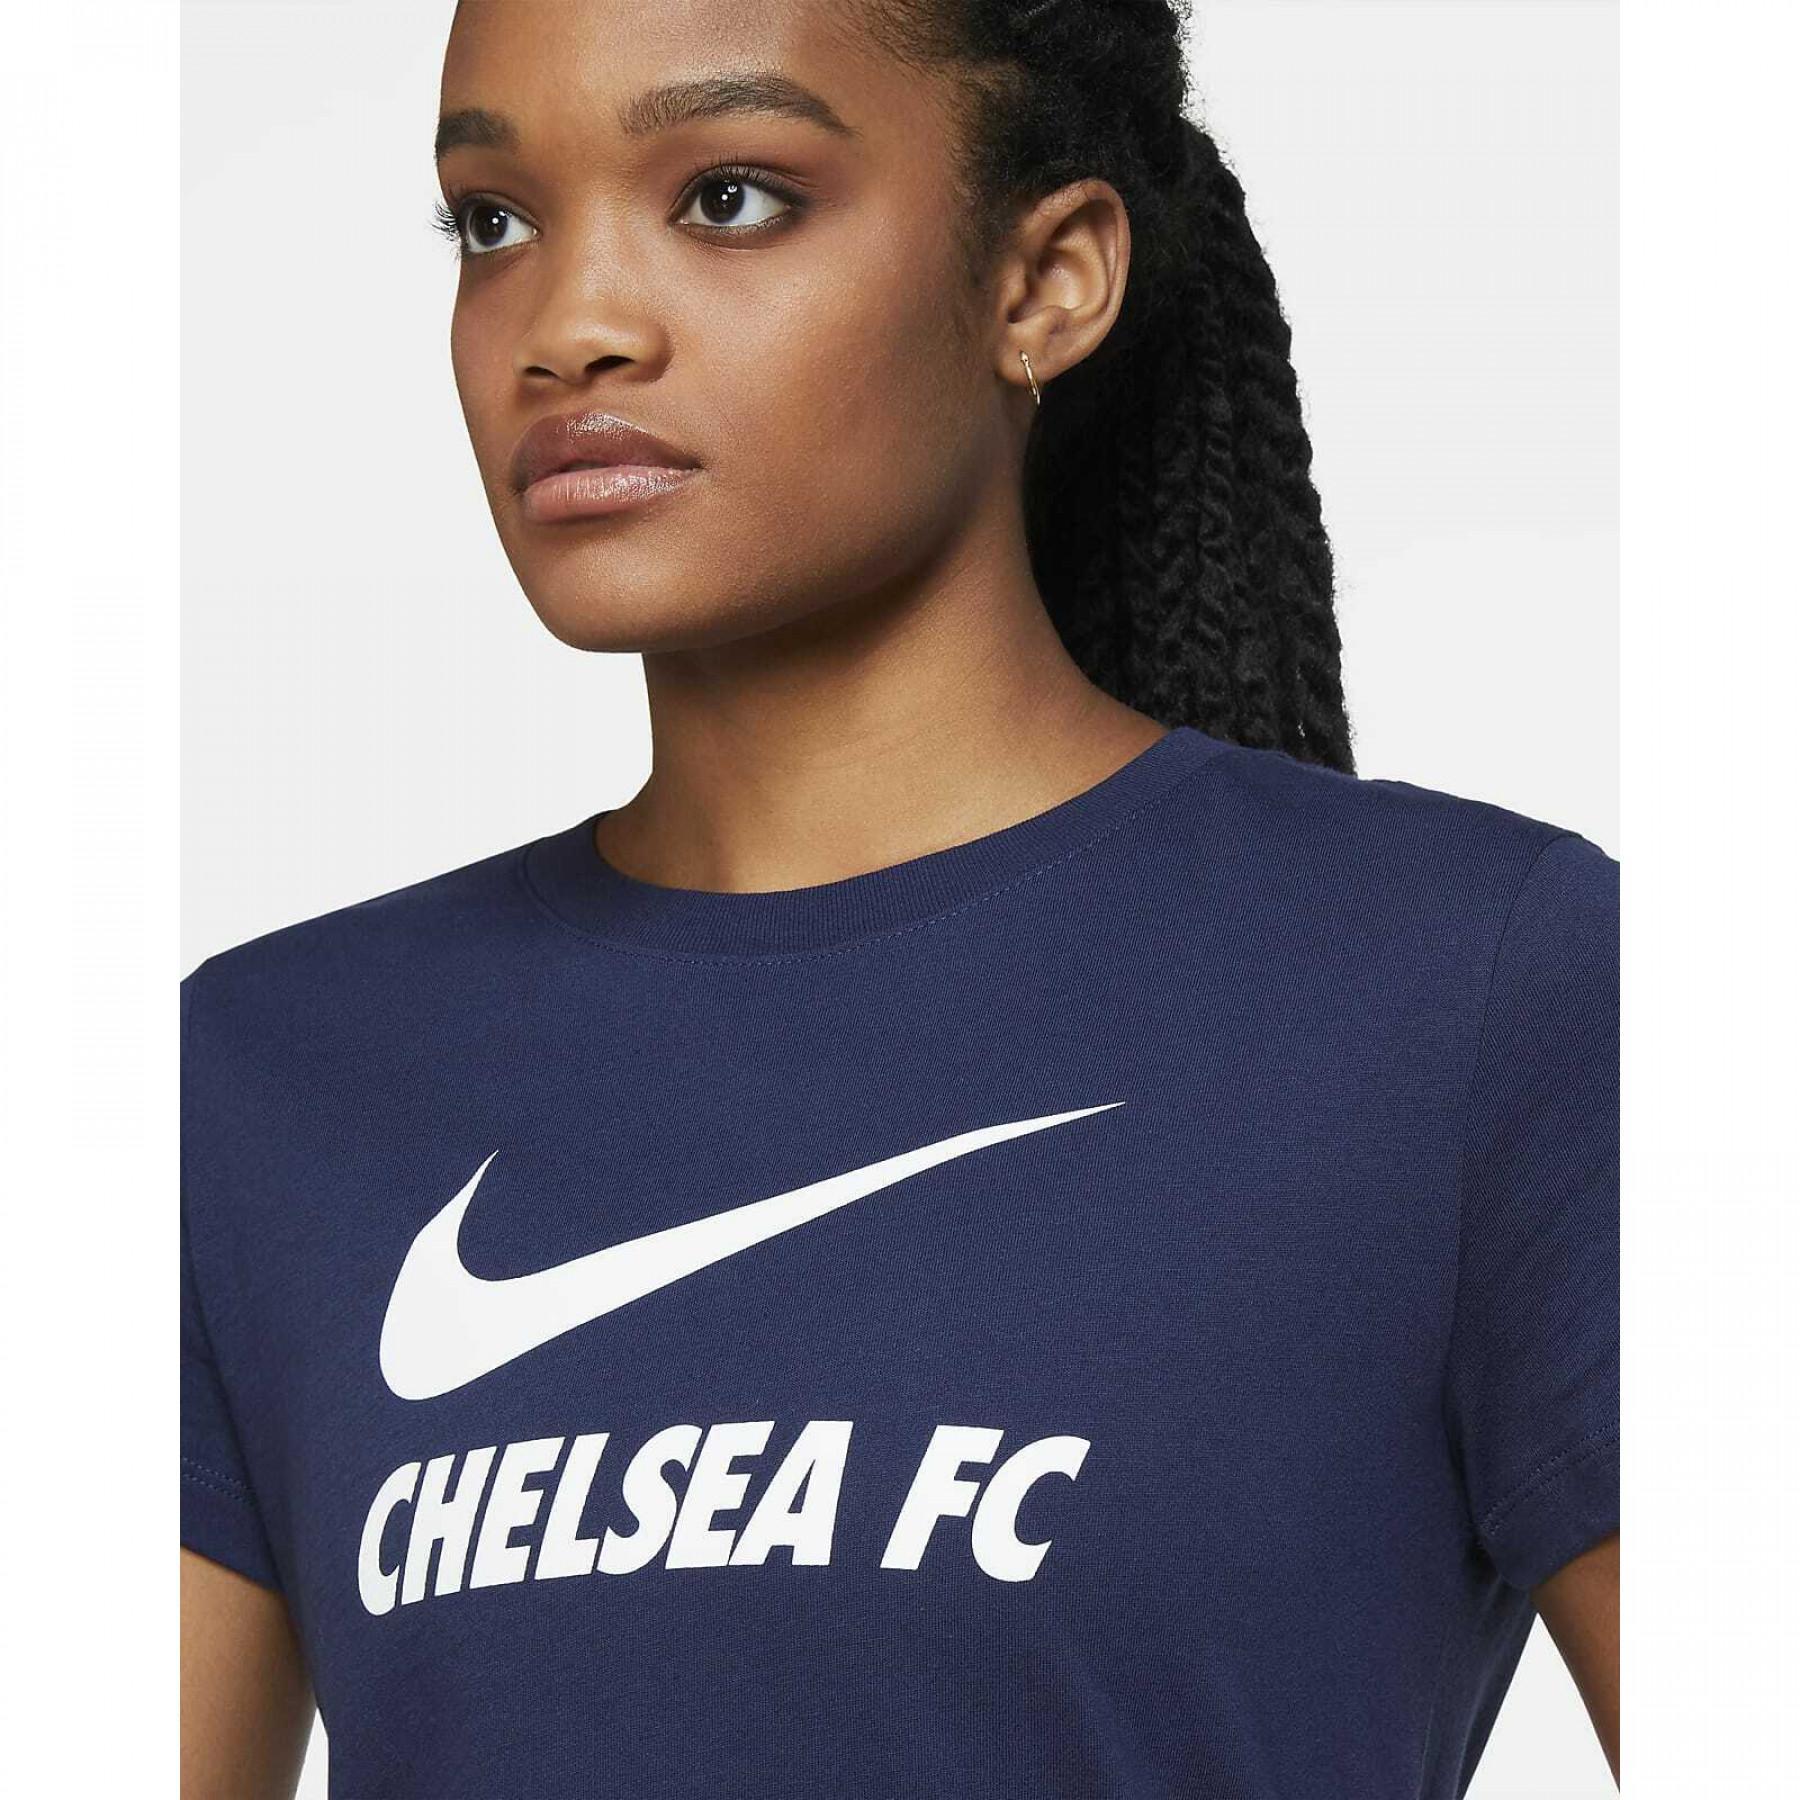 Camiseta feminina Chelsea 2020/21